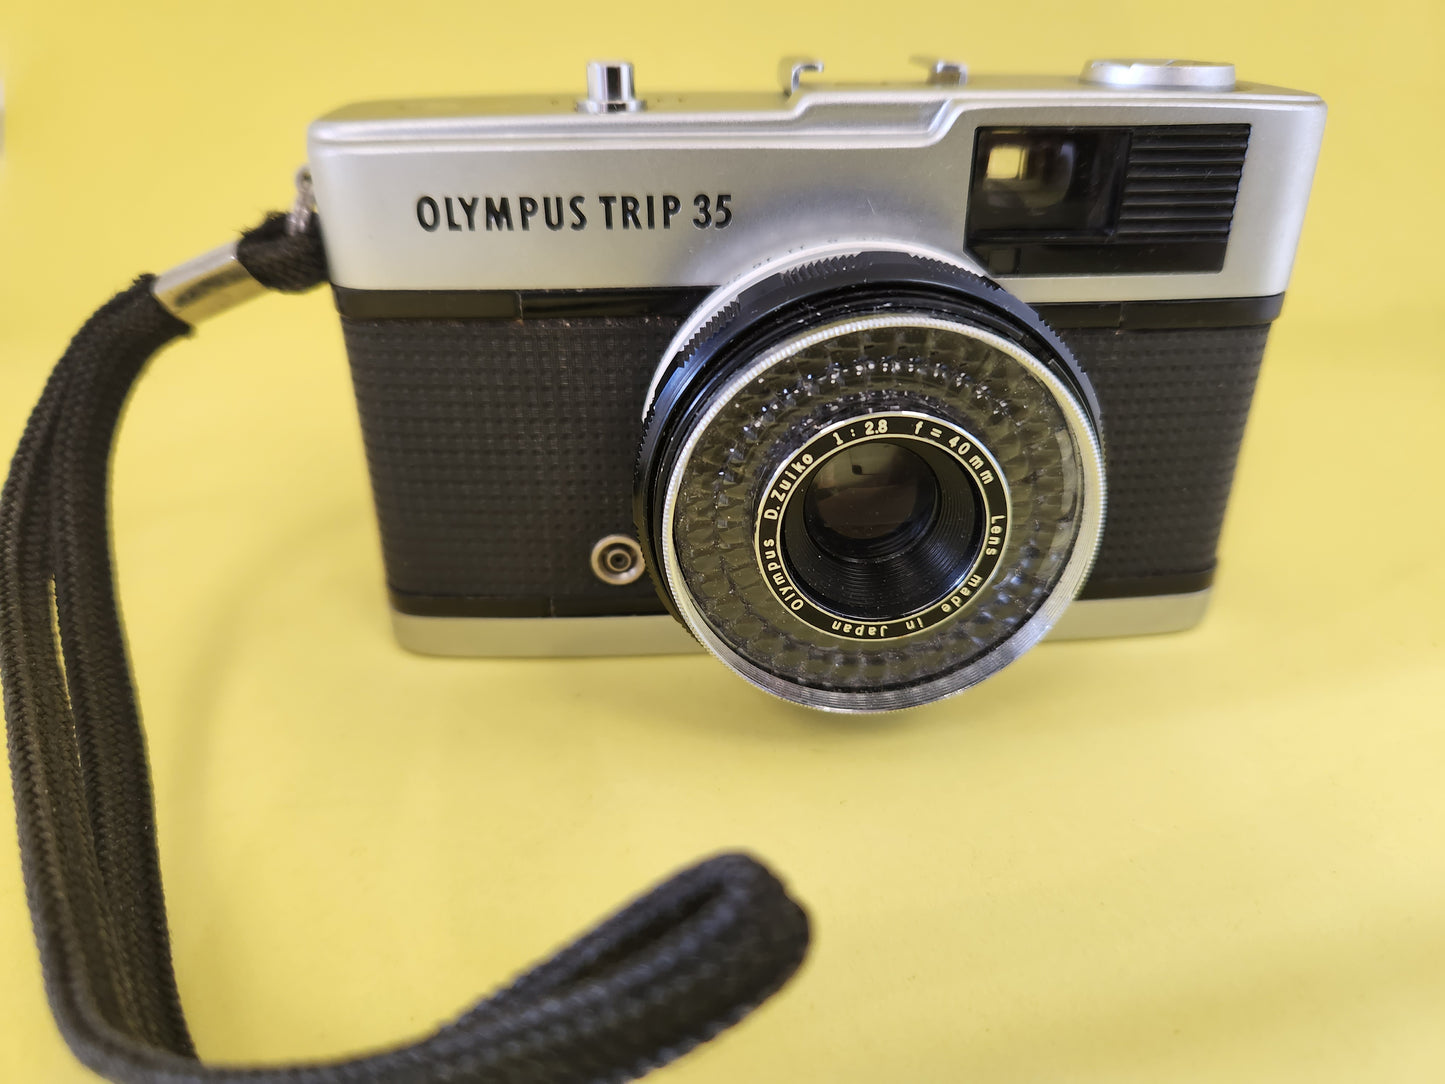 Olympus Trip 35 vintage camera used